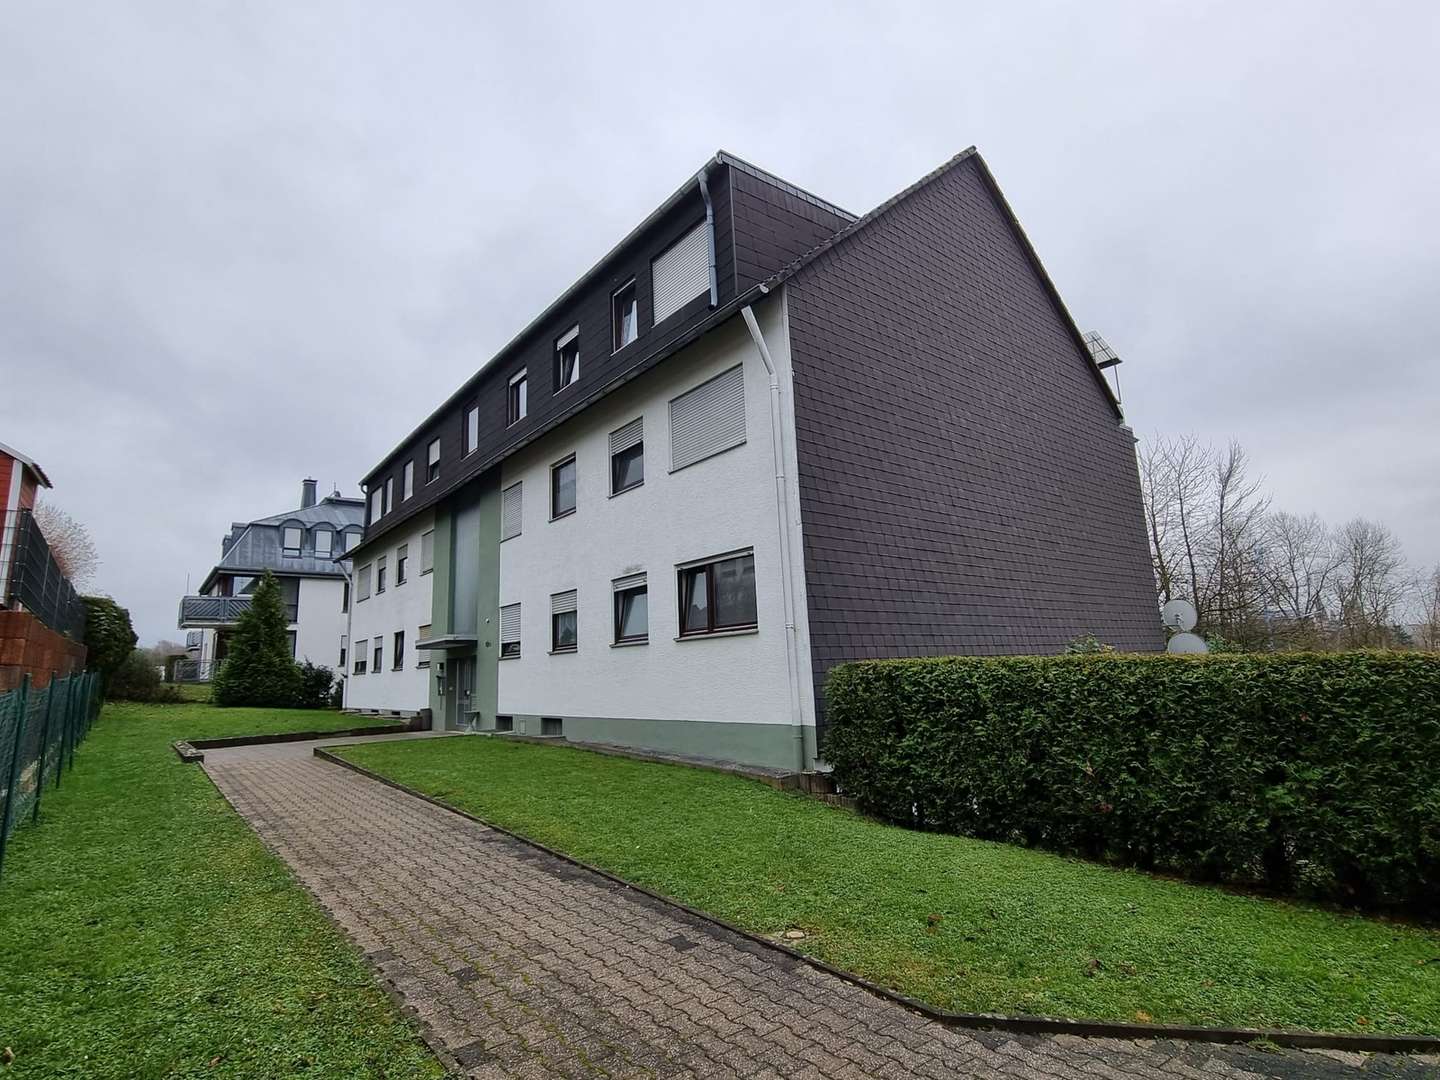 Haus und Zuwegung  - Sonstige in 65549 Limburg mit 842m² als Kapitalanlage kaufen